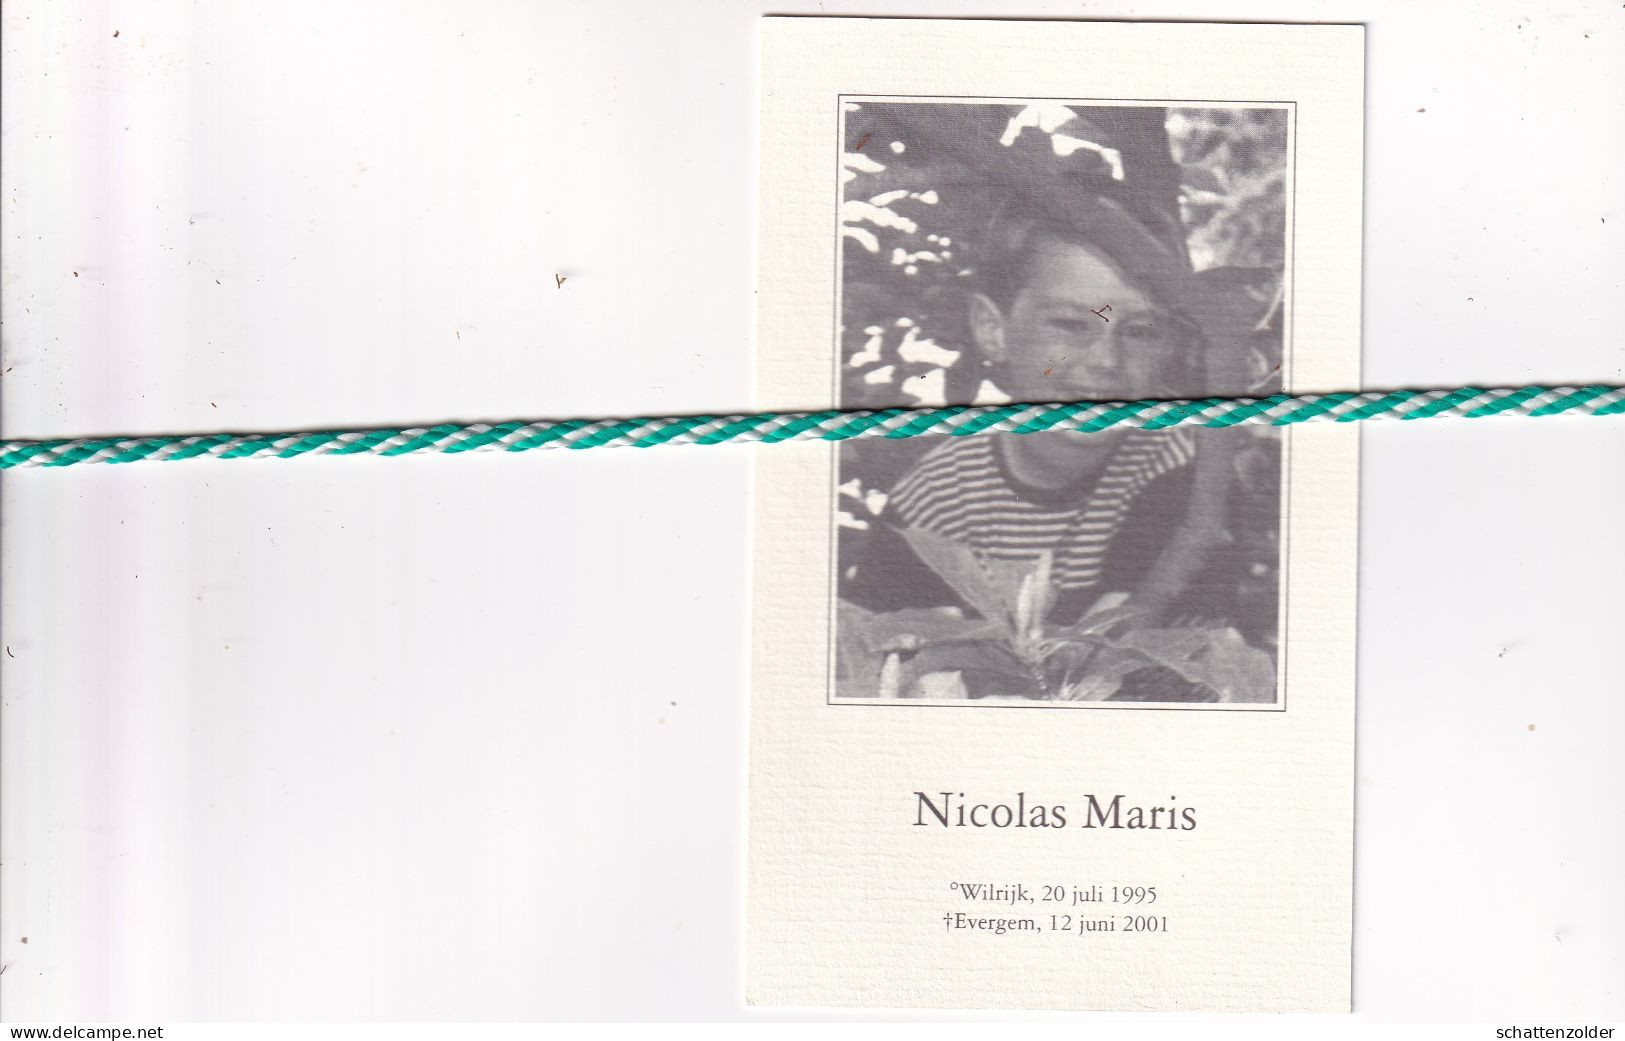 Nicolas Maris, Wilrijk 1995, Evergem 2001. Foto - Obituary Notices